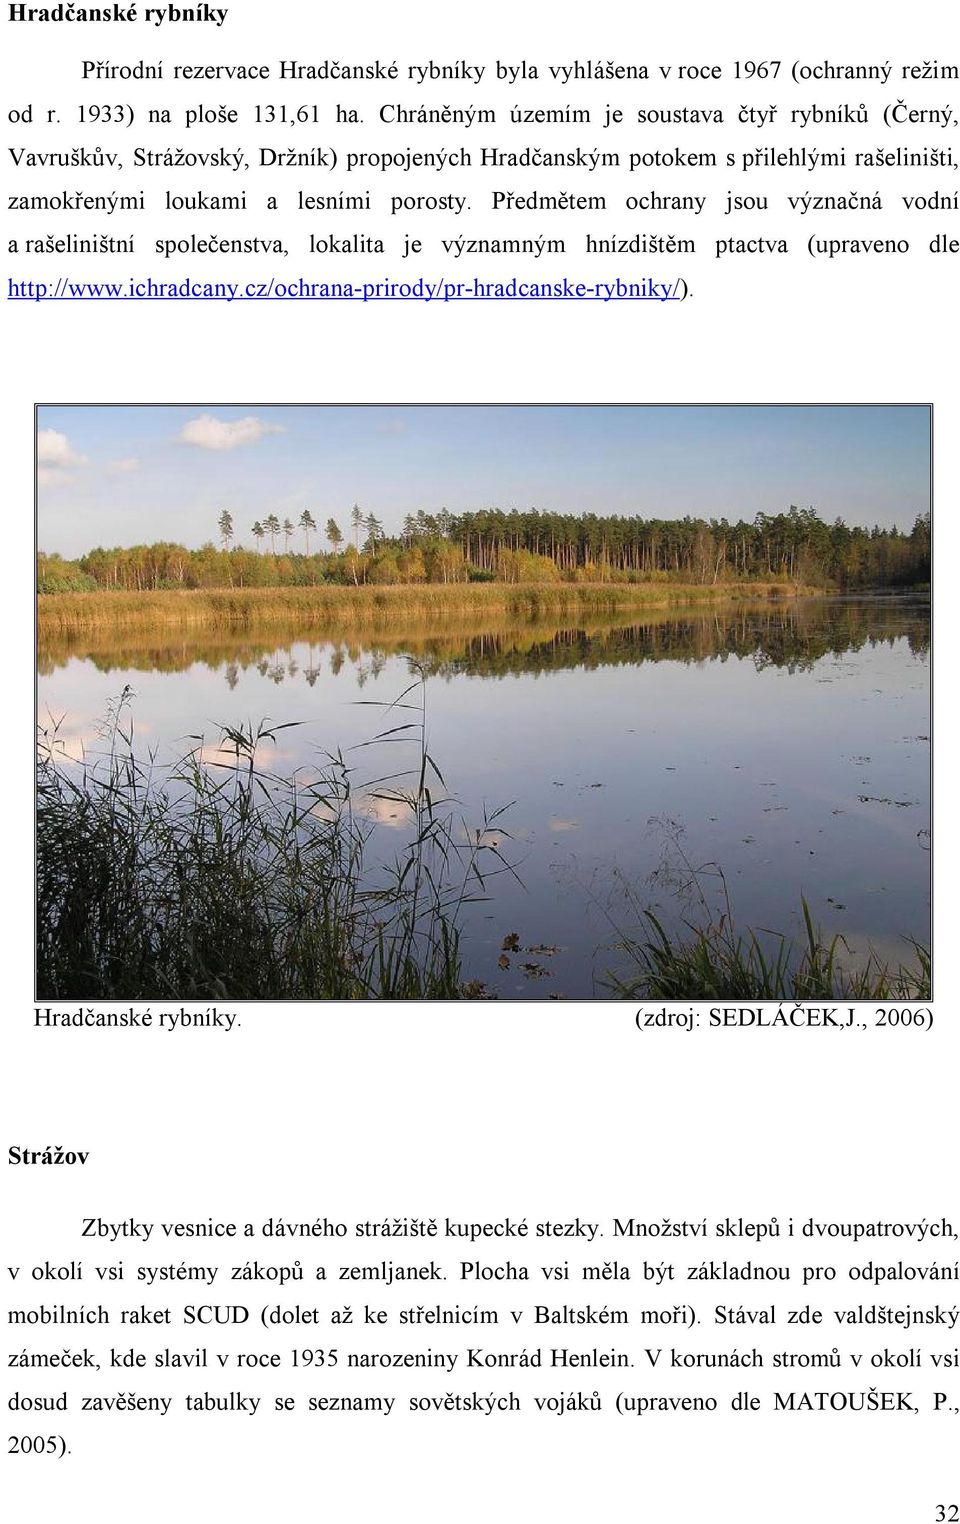 Předmětem ochrany jsou význačná vodní a rašeliništní společenstva, lokalita je významným hnízdištěm ptactva (upraveno dle http://www.ichradcany.cz/ochrana-prirody/pr-hradcanske-rybniky/).